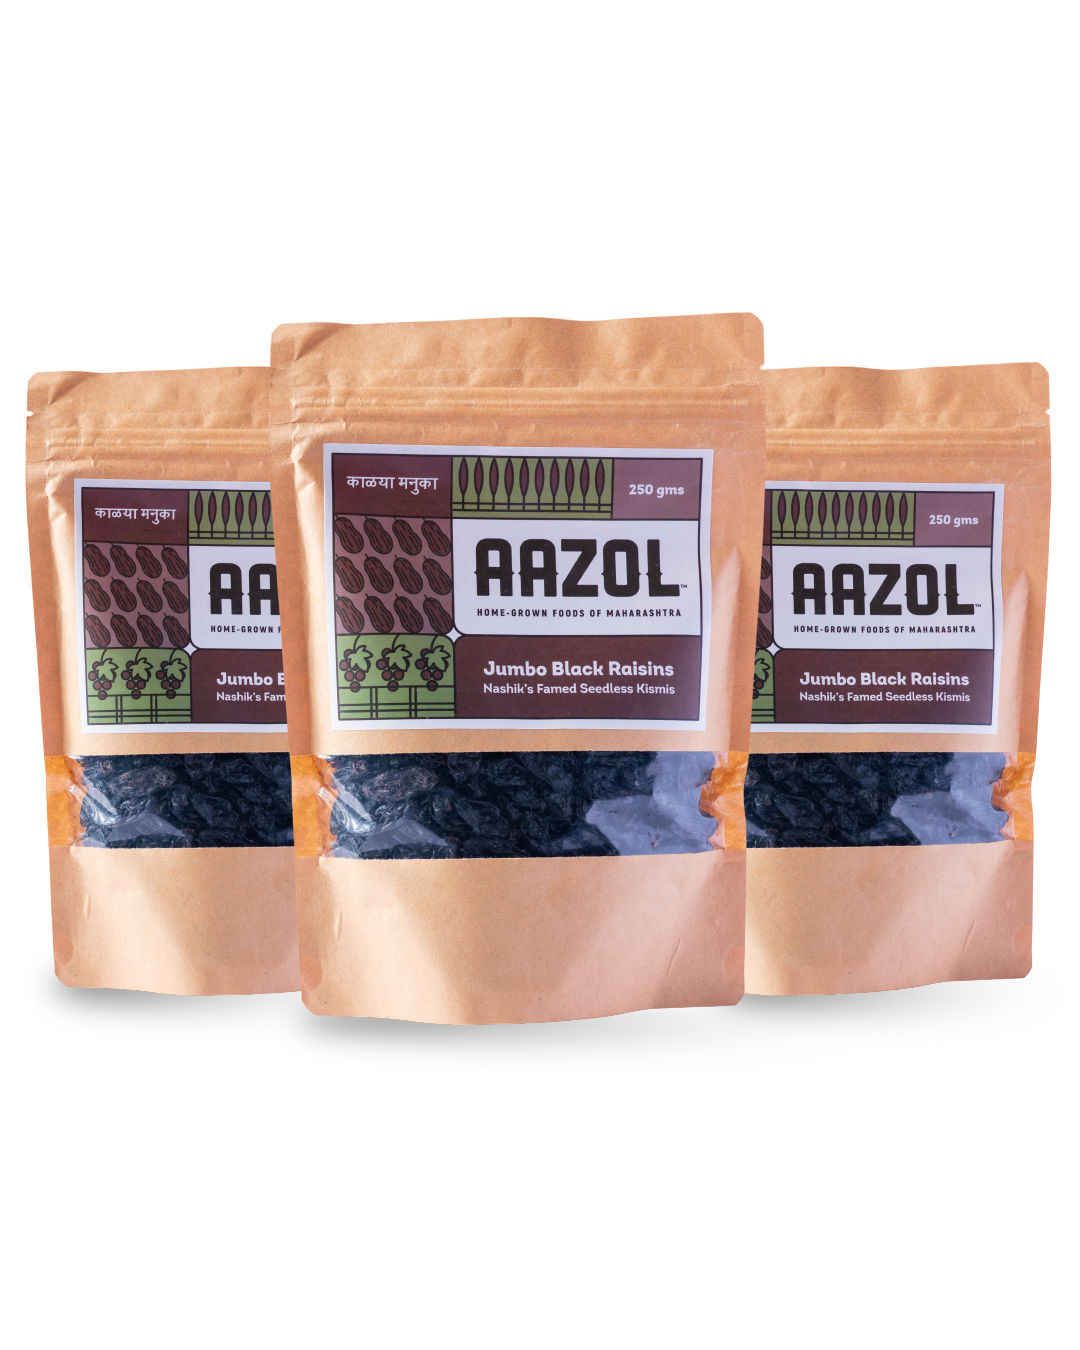 Aazol Jumbo Black Raisins: Nashik's Famed Seedless Kismis - 250gms (Pack of 3) - hfnl!fe